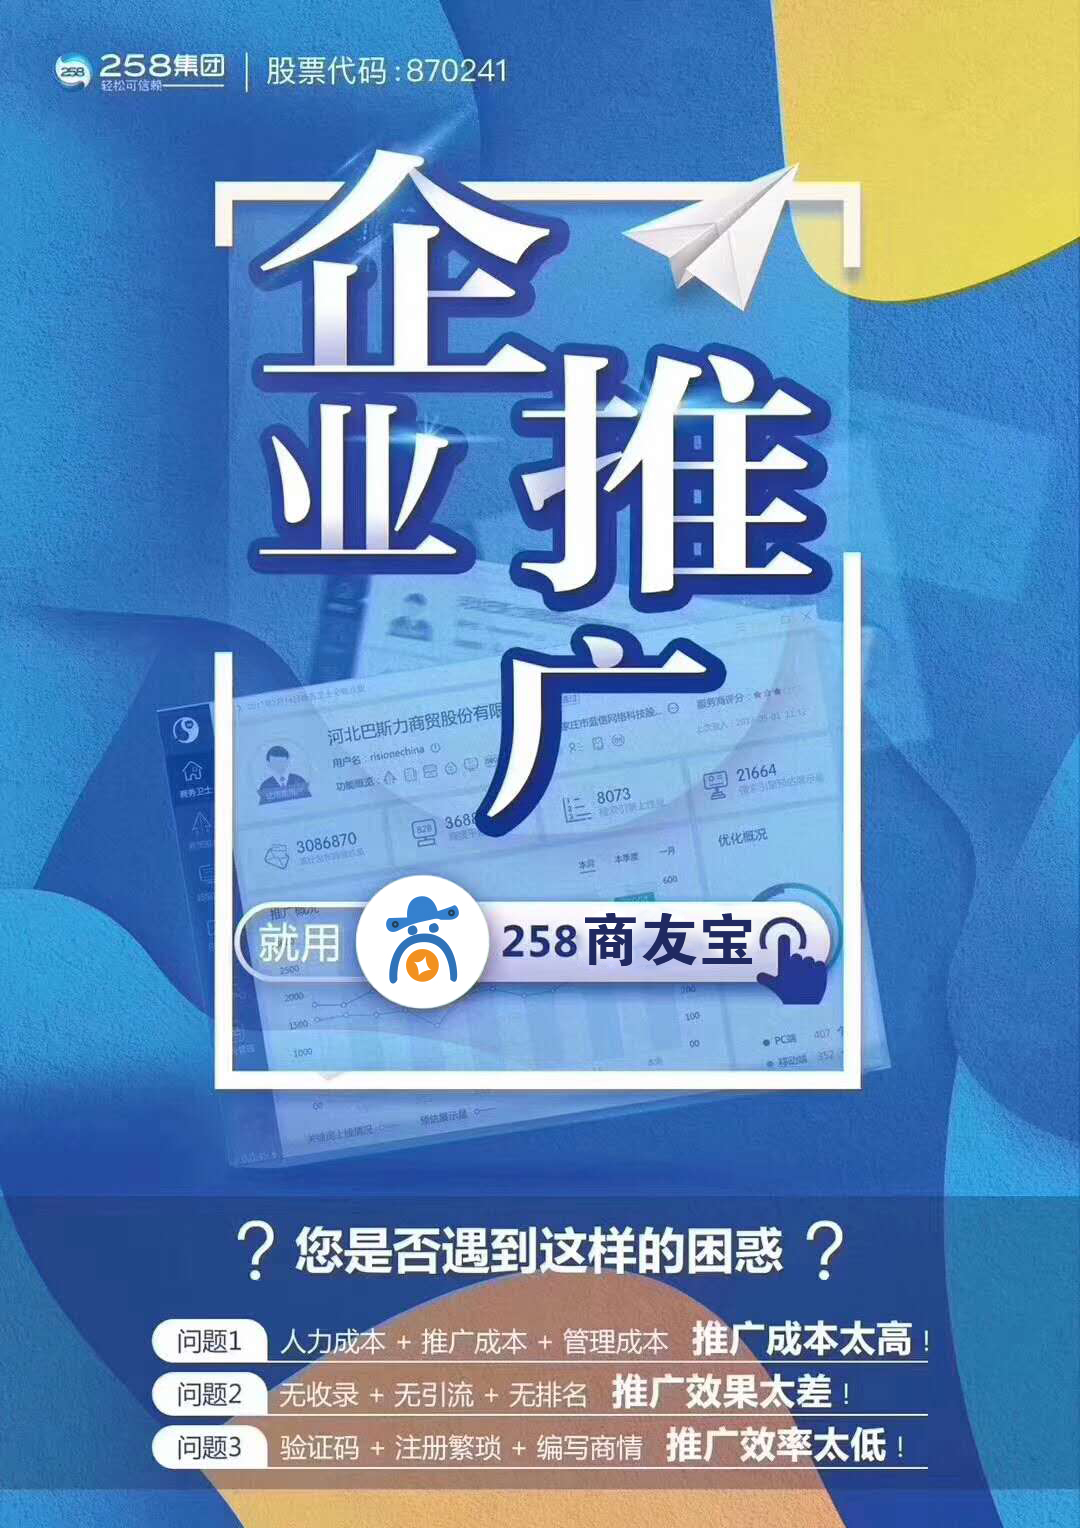 鄭州網絡推廣服務商 